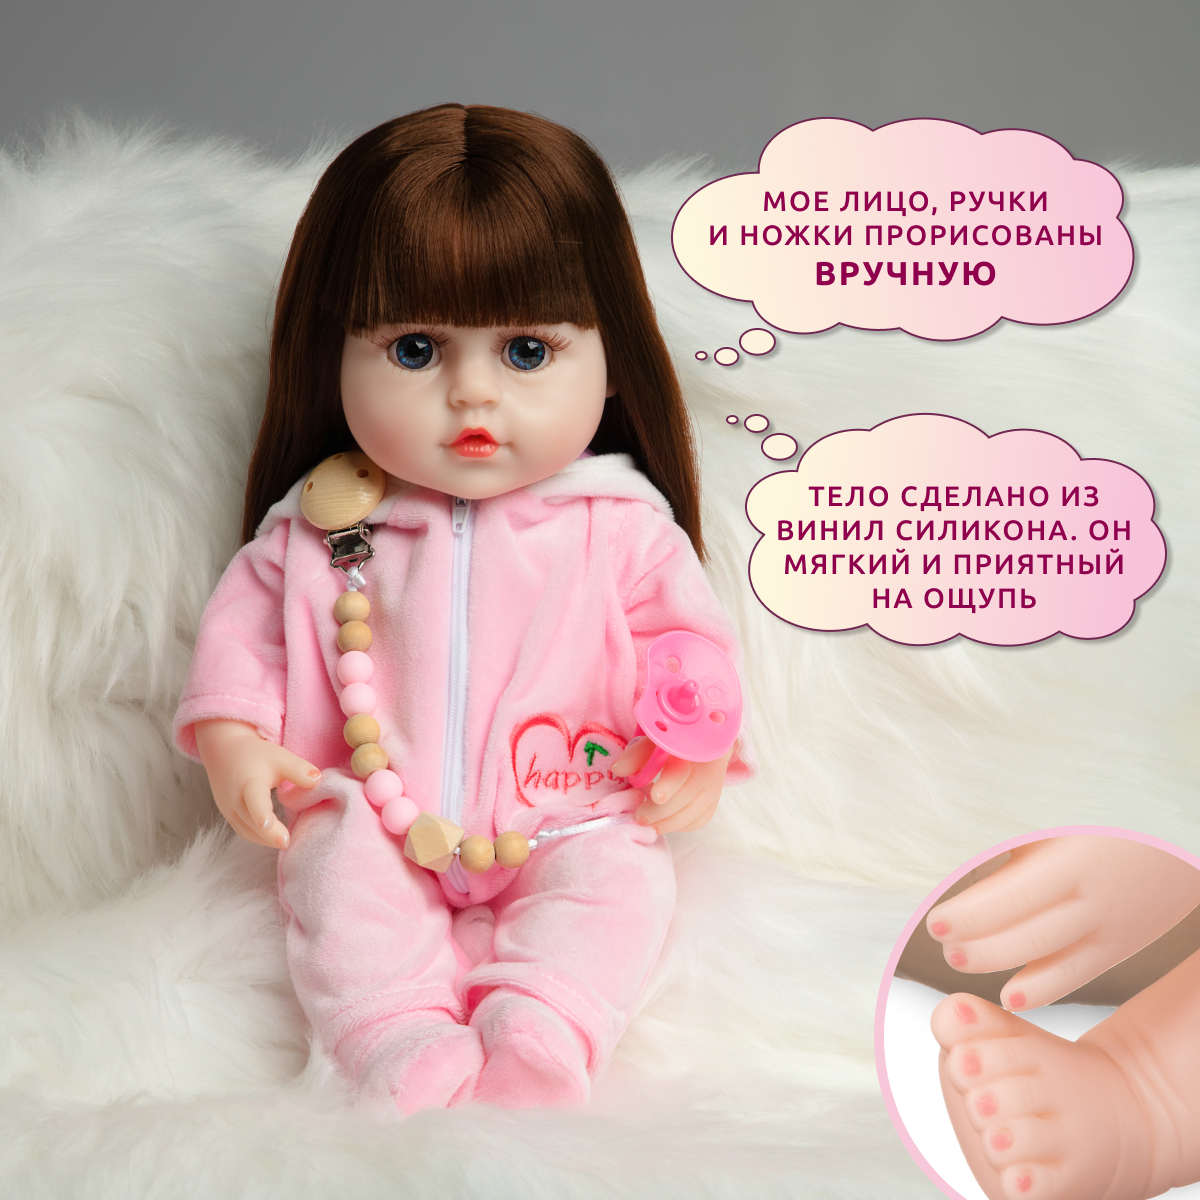 Кукла Реборн QA BABY Альбина девочка интерактивная Пупс набор игрушки для ванной для девочки 38 см 3805 - фото 8